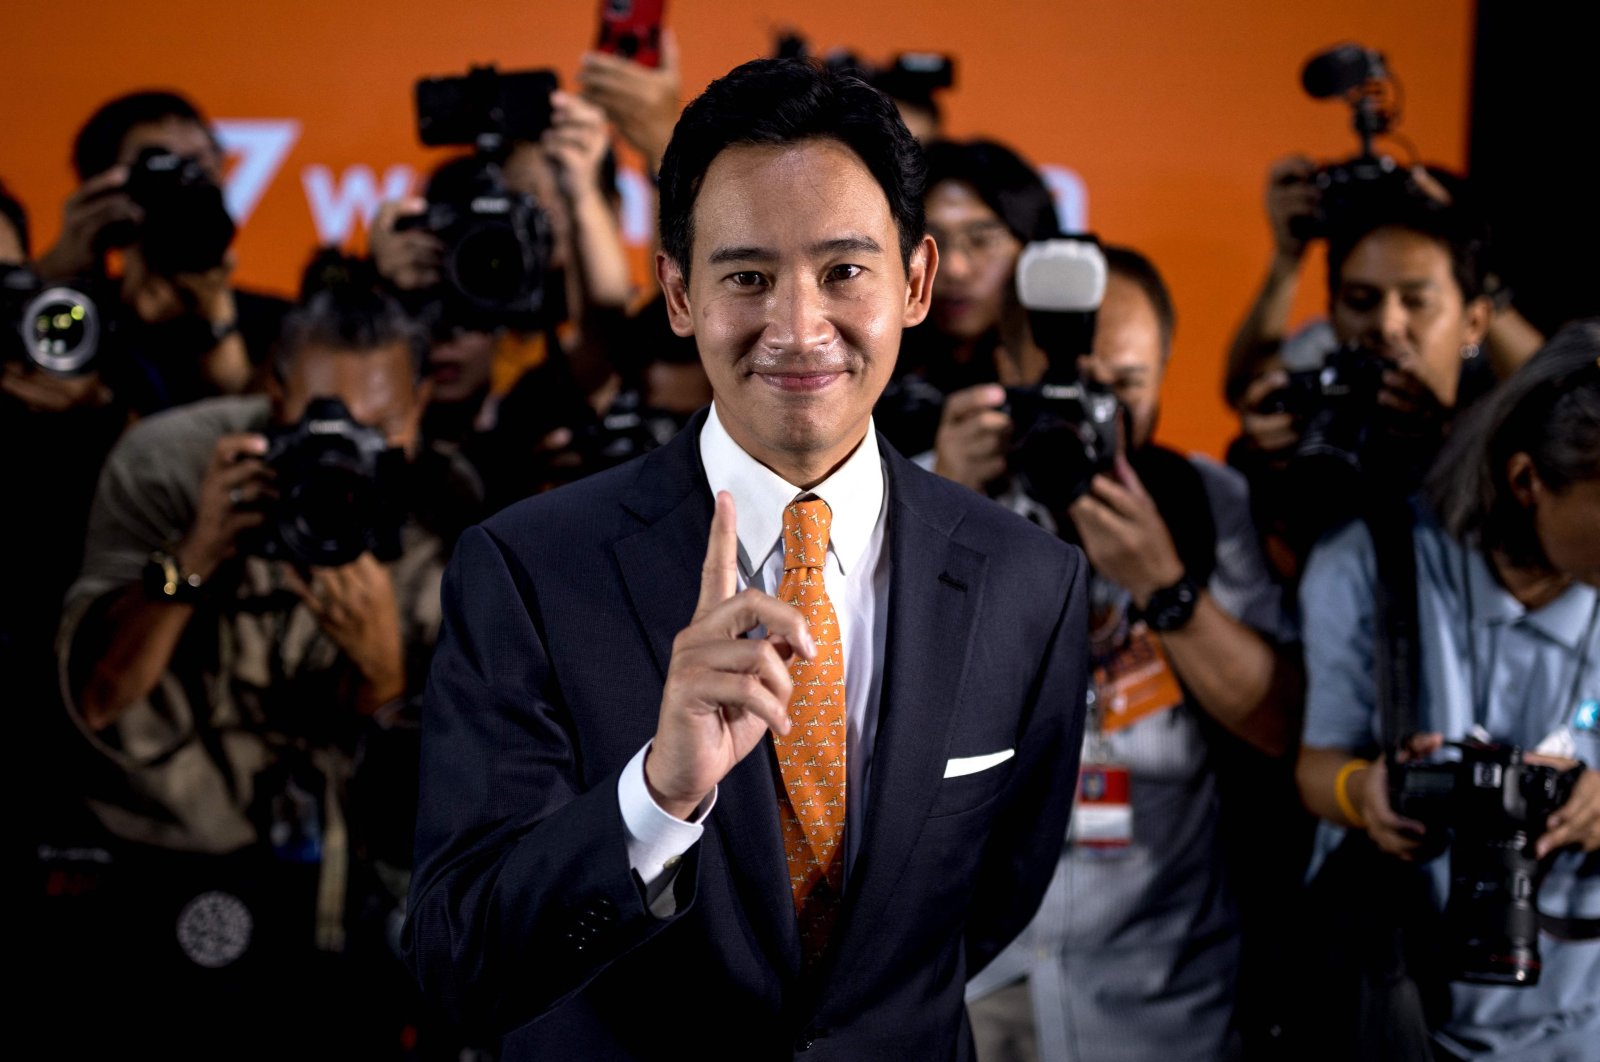 Oposisi menyapu jajak pendapat Thailand dengan janji untuk reformasi radikal